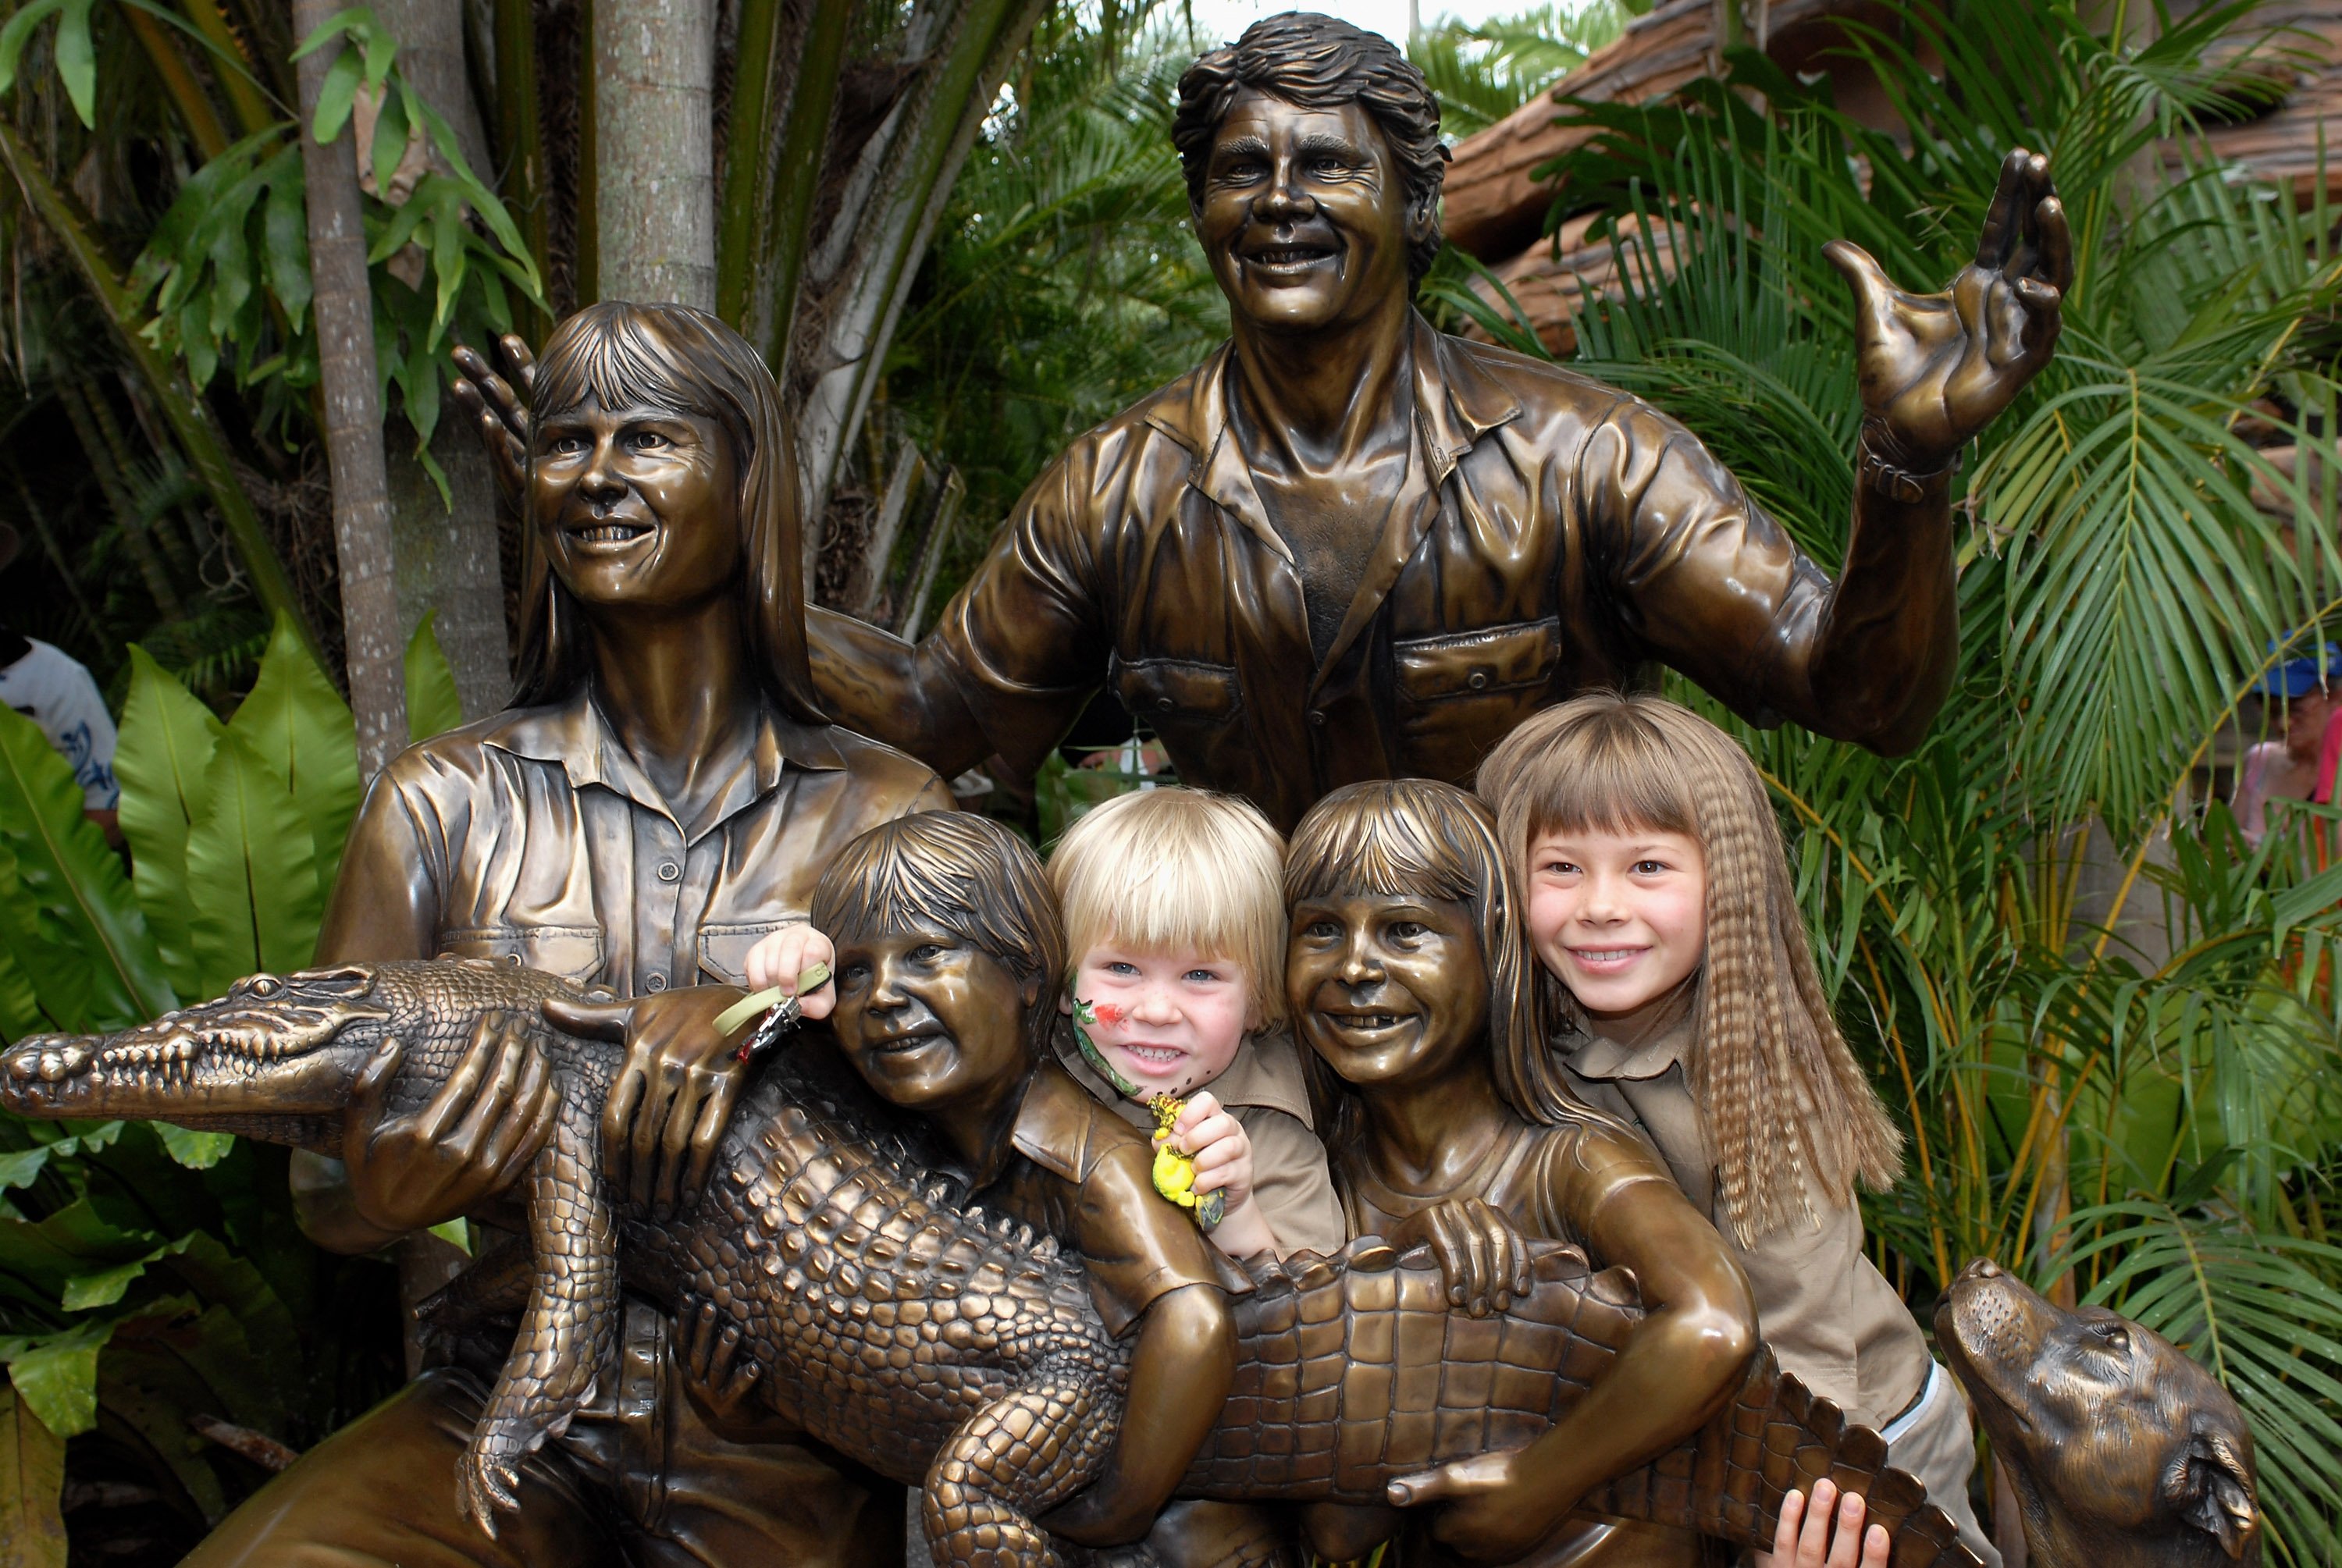 Al inaugurar la estatua conmemorativa de la familia, Robert Irwin y Bindi Irwin asistieron al "Día en memoria de Steve Irwin" en el zoológico de Australia, el 15 de noviembre de 2007 en Sunshine Coast, Australia. | Foto: Getty Images